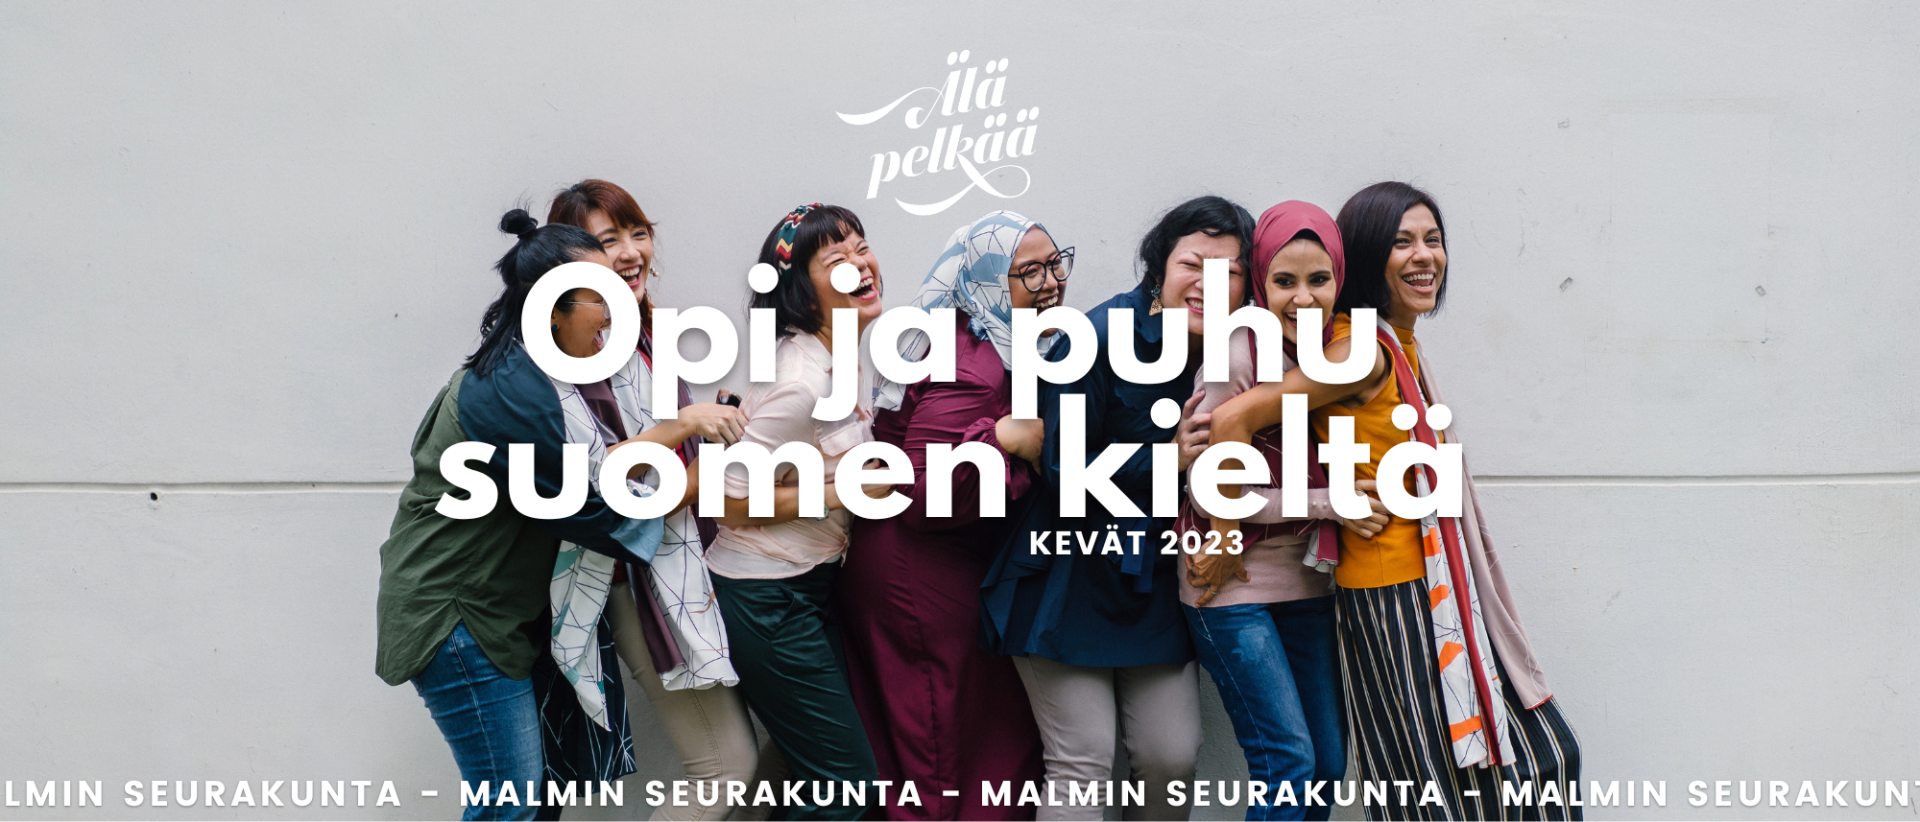 Nauravia ihmisiä rivissä, valkoisella teksti opi ja puhu suomen kieltä, kevät 2023, Malmin seurakunta